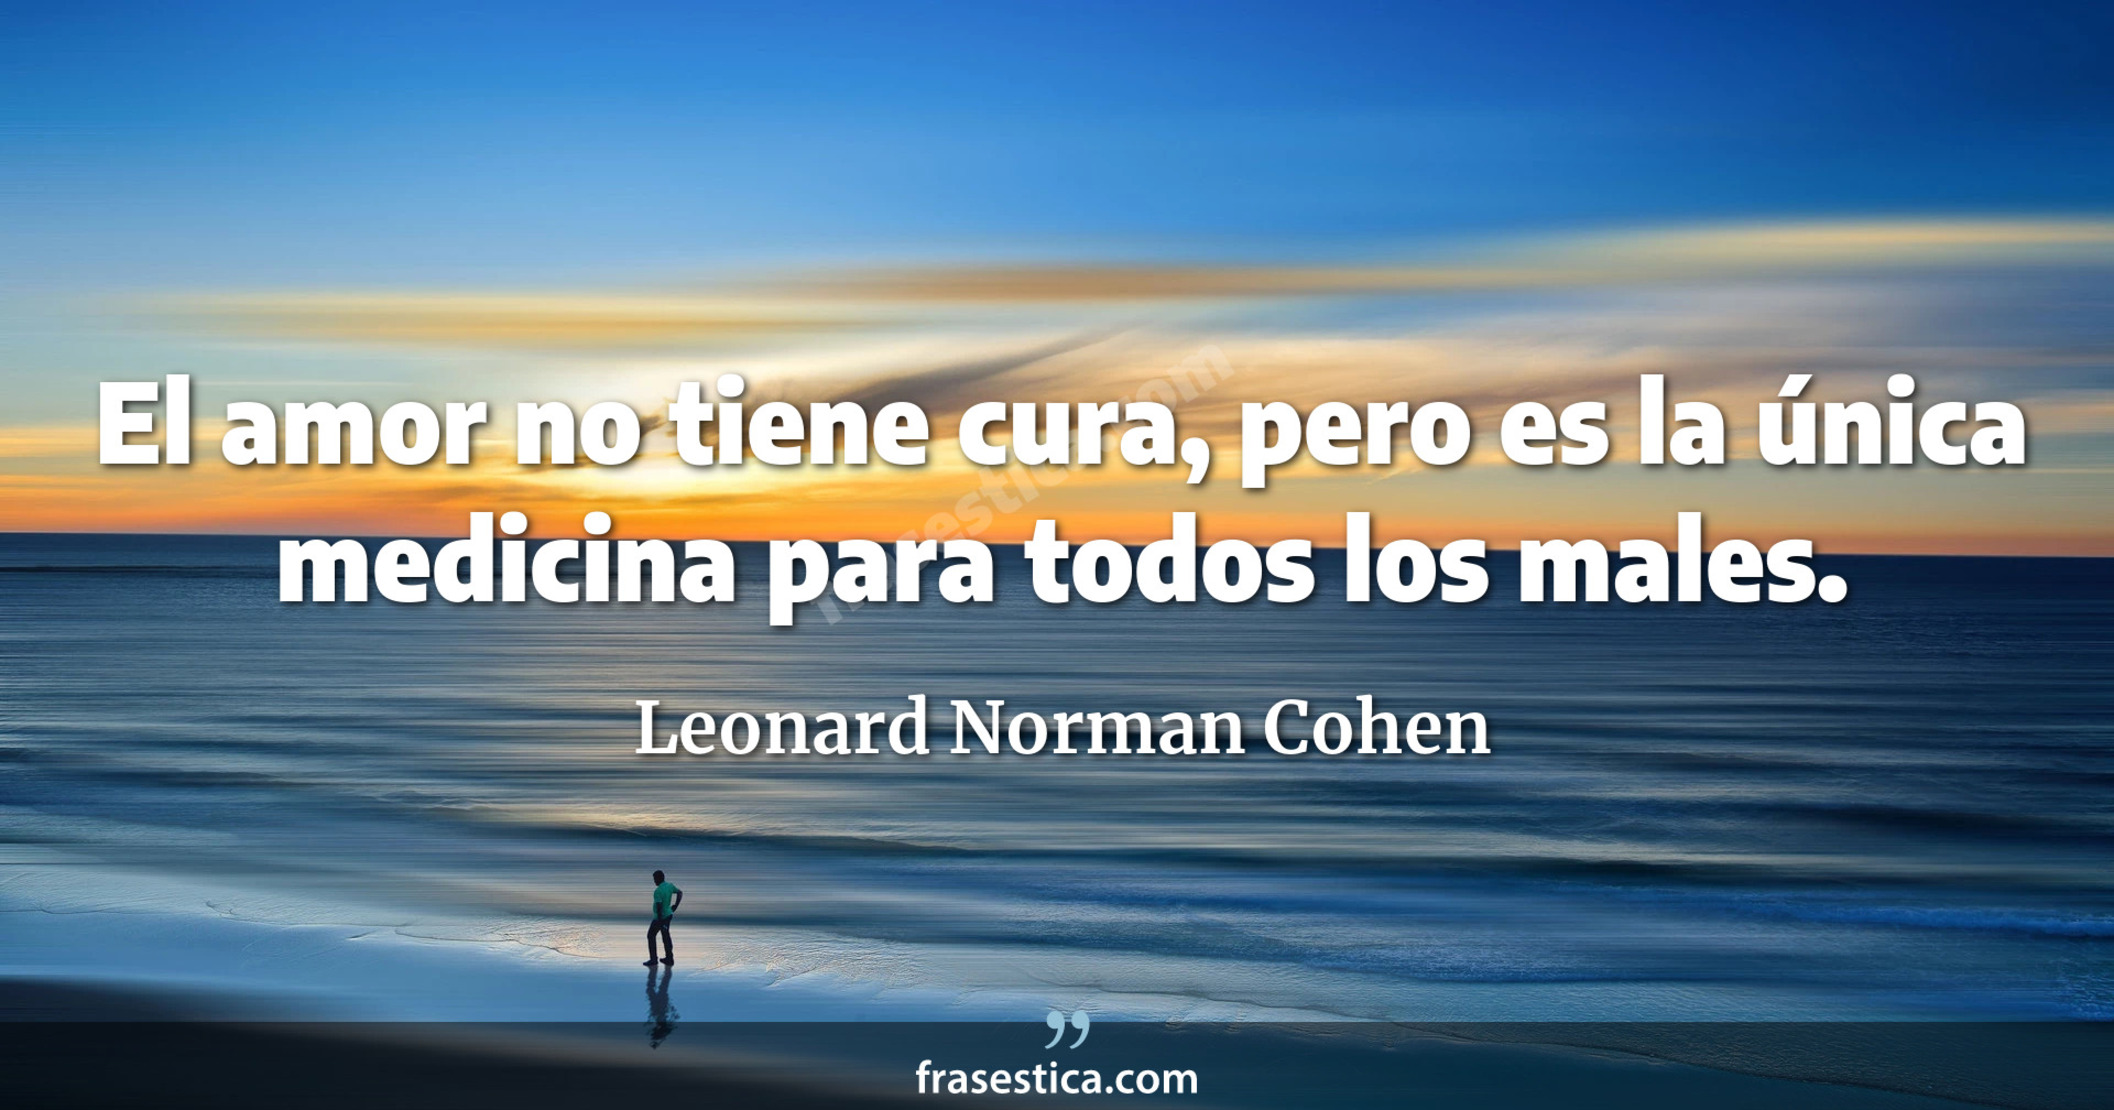 El amor no tiene cura, pero es la única medicina para todos los males. - Leonard Norman Cohen